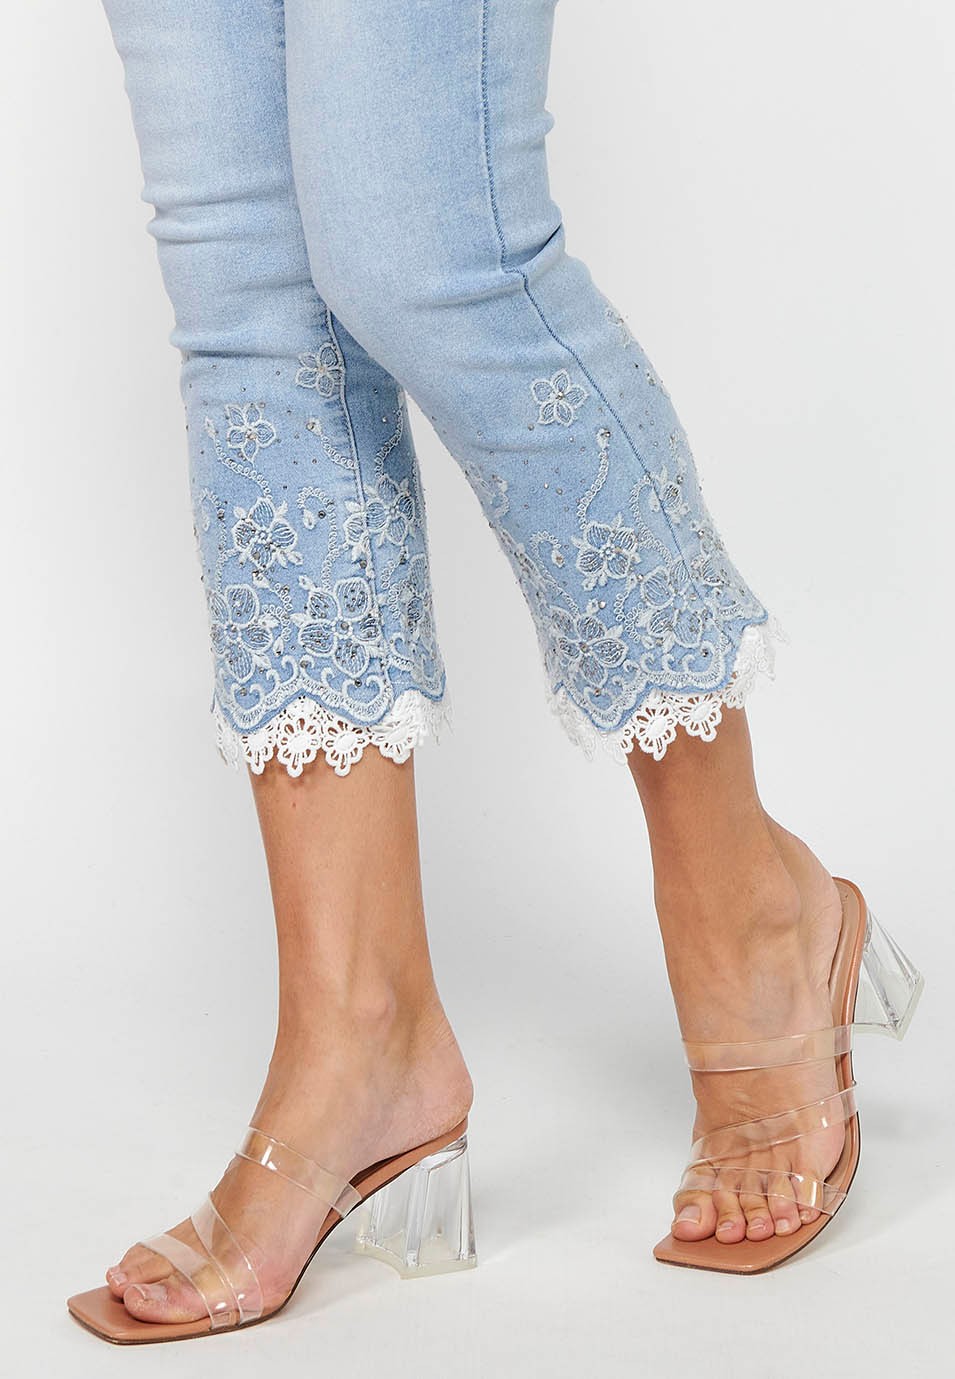 Pantalón largo jeans slim con Cierre delantero con cremallera y Detalles bordados florales de Color Azul claro para Mujer 7